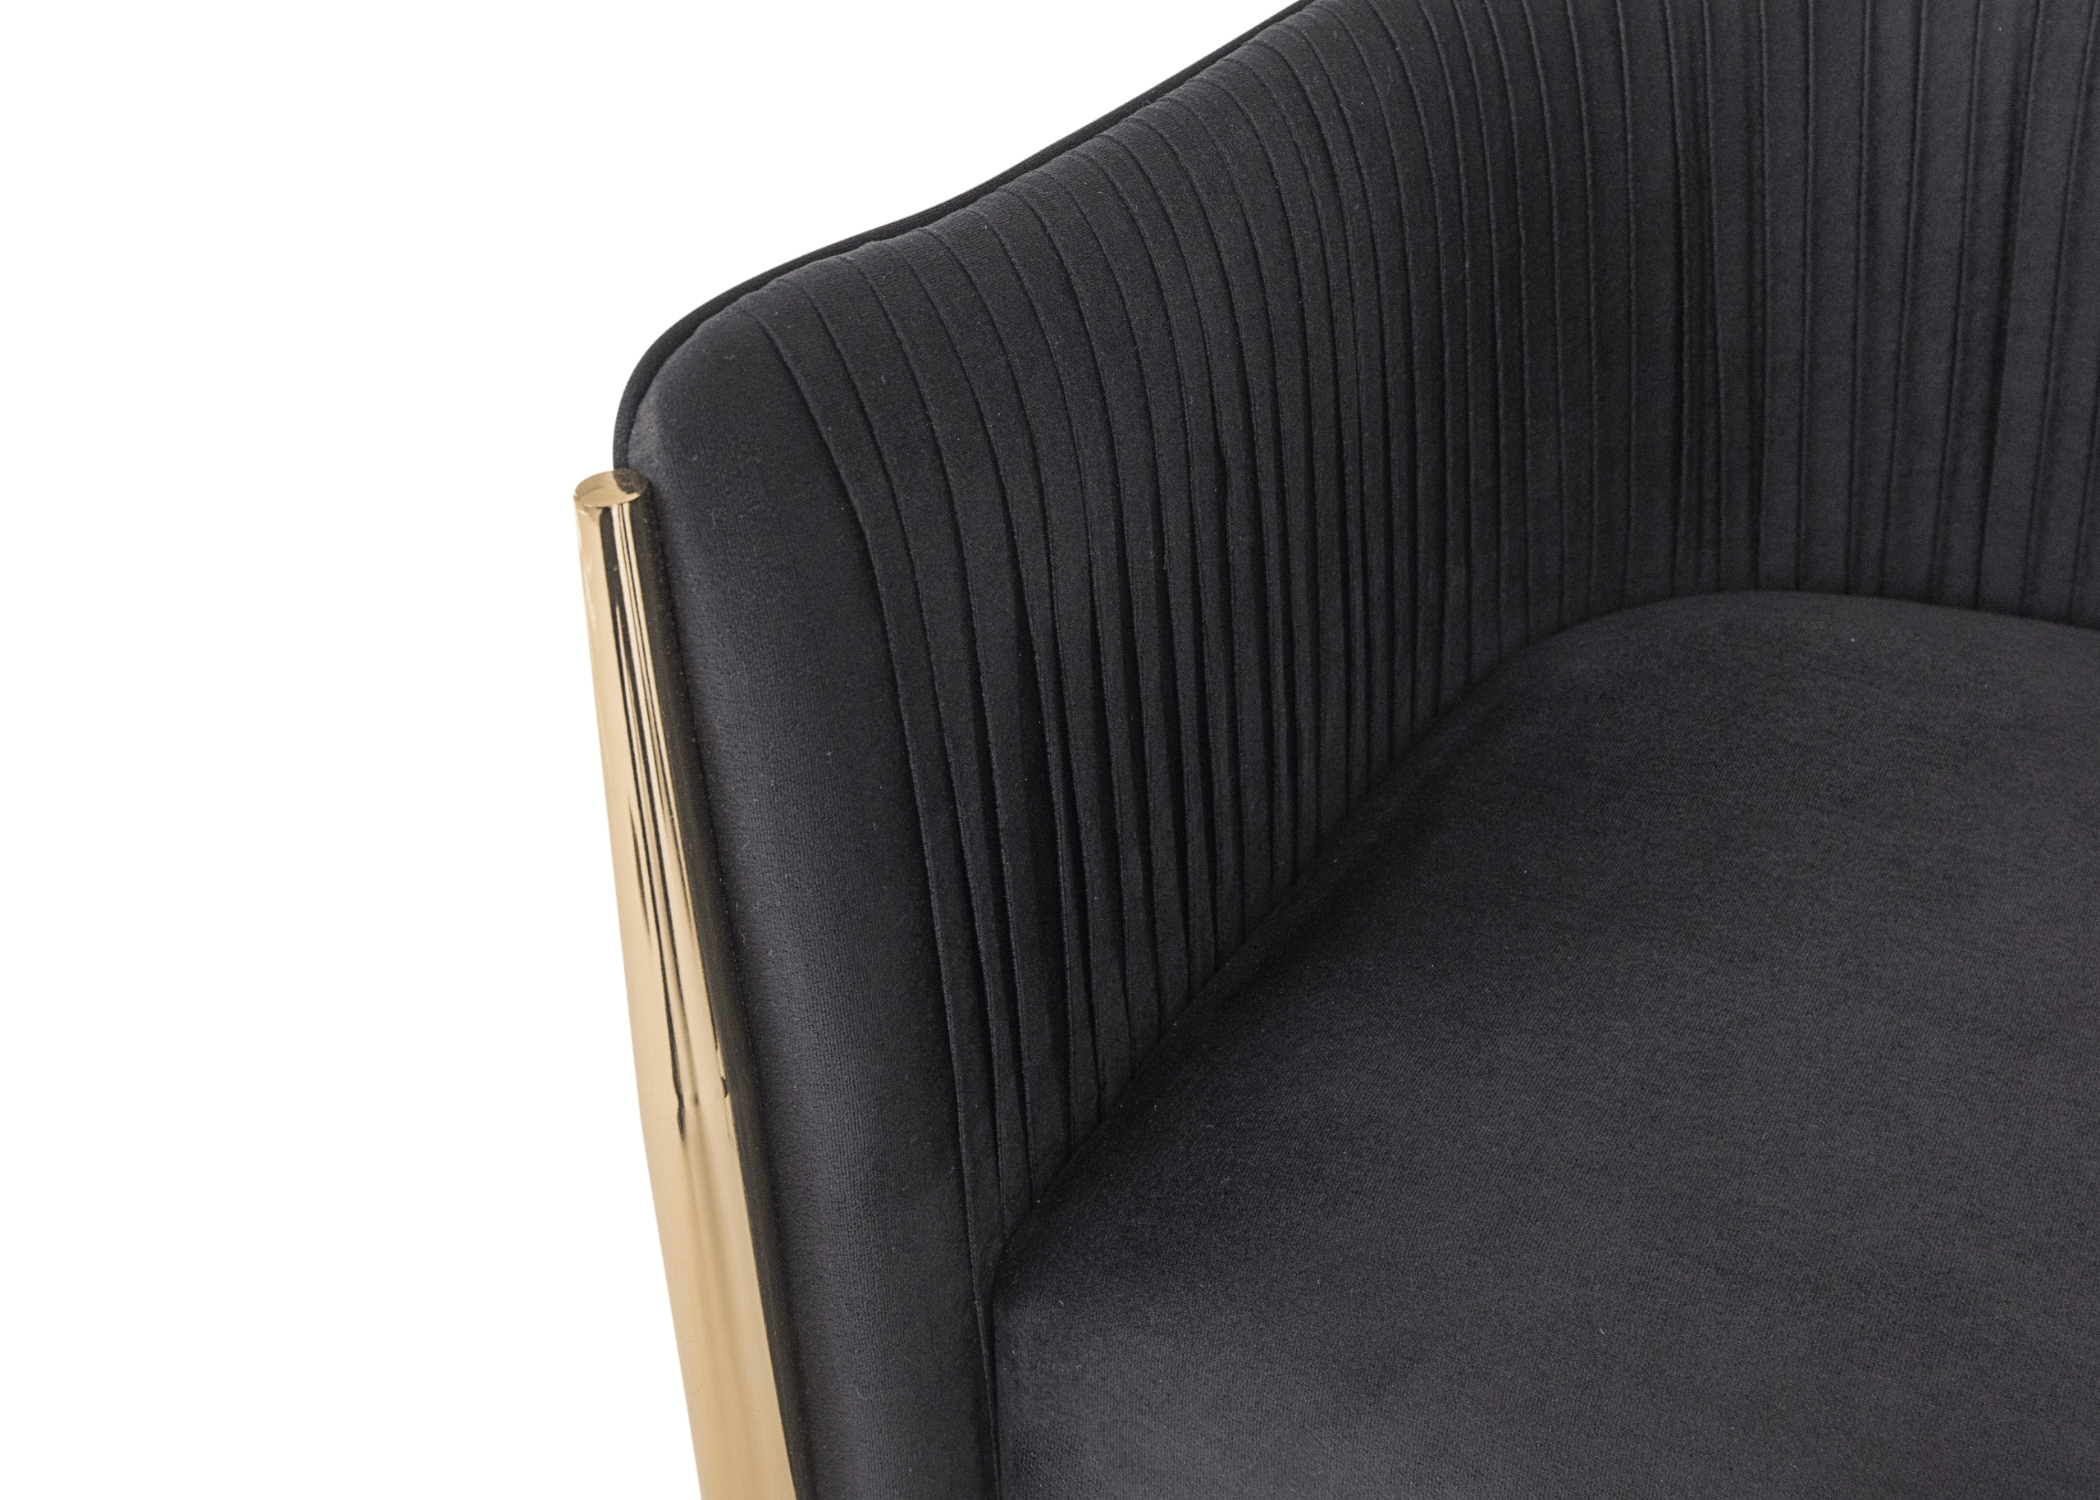 O encosto plissado da Poltrona Aline não só acrescenta uma textura agradável ao toque, mas também confere uma sensação de luxo e exclusividade.